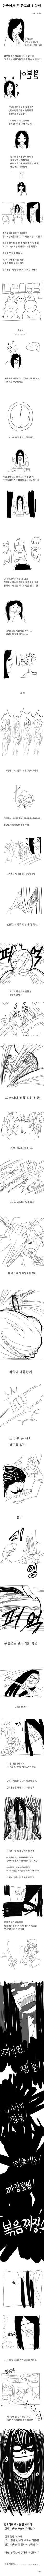 실화)한국에서 온 공포의 전학생 만화